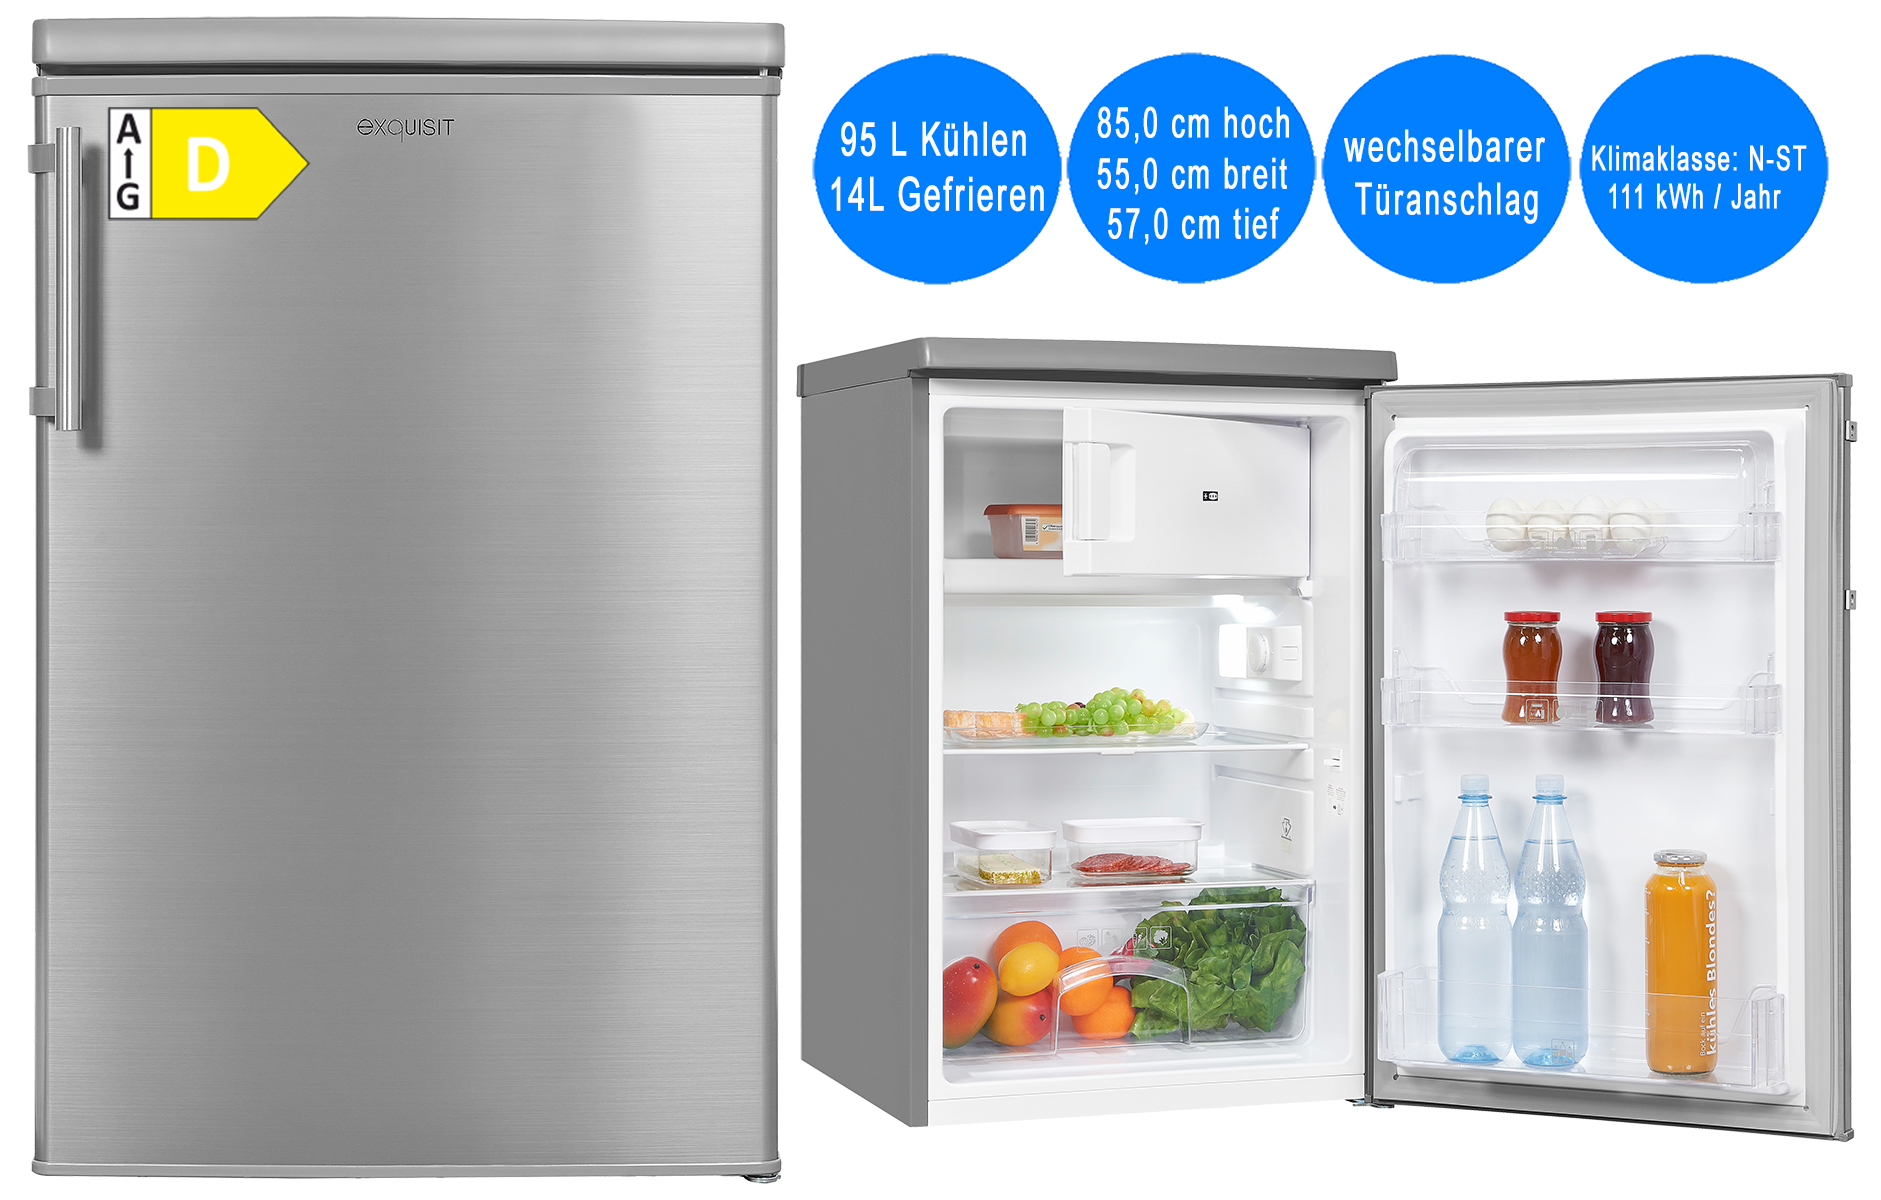 Exquisit Kühlschrank mit Gefrierfach 109L Nutzinhalt Silber freistehend  55cm breit, freistehende Kühlschränke, Kühlschrank, Kühlen & Gefrieren